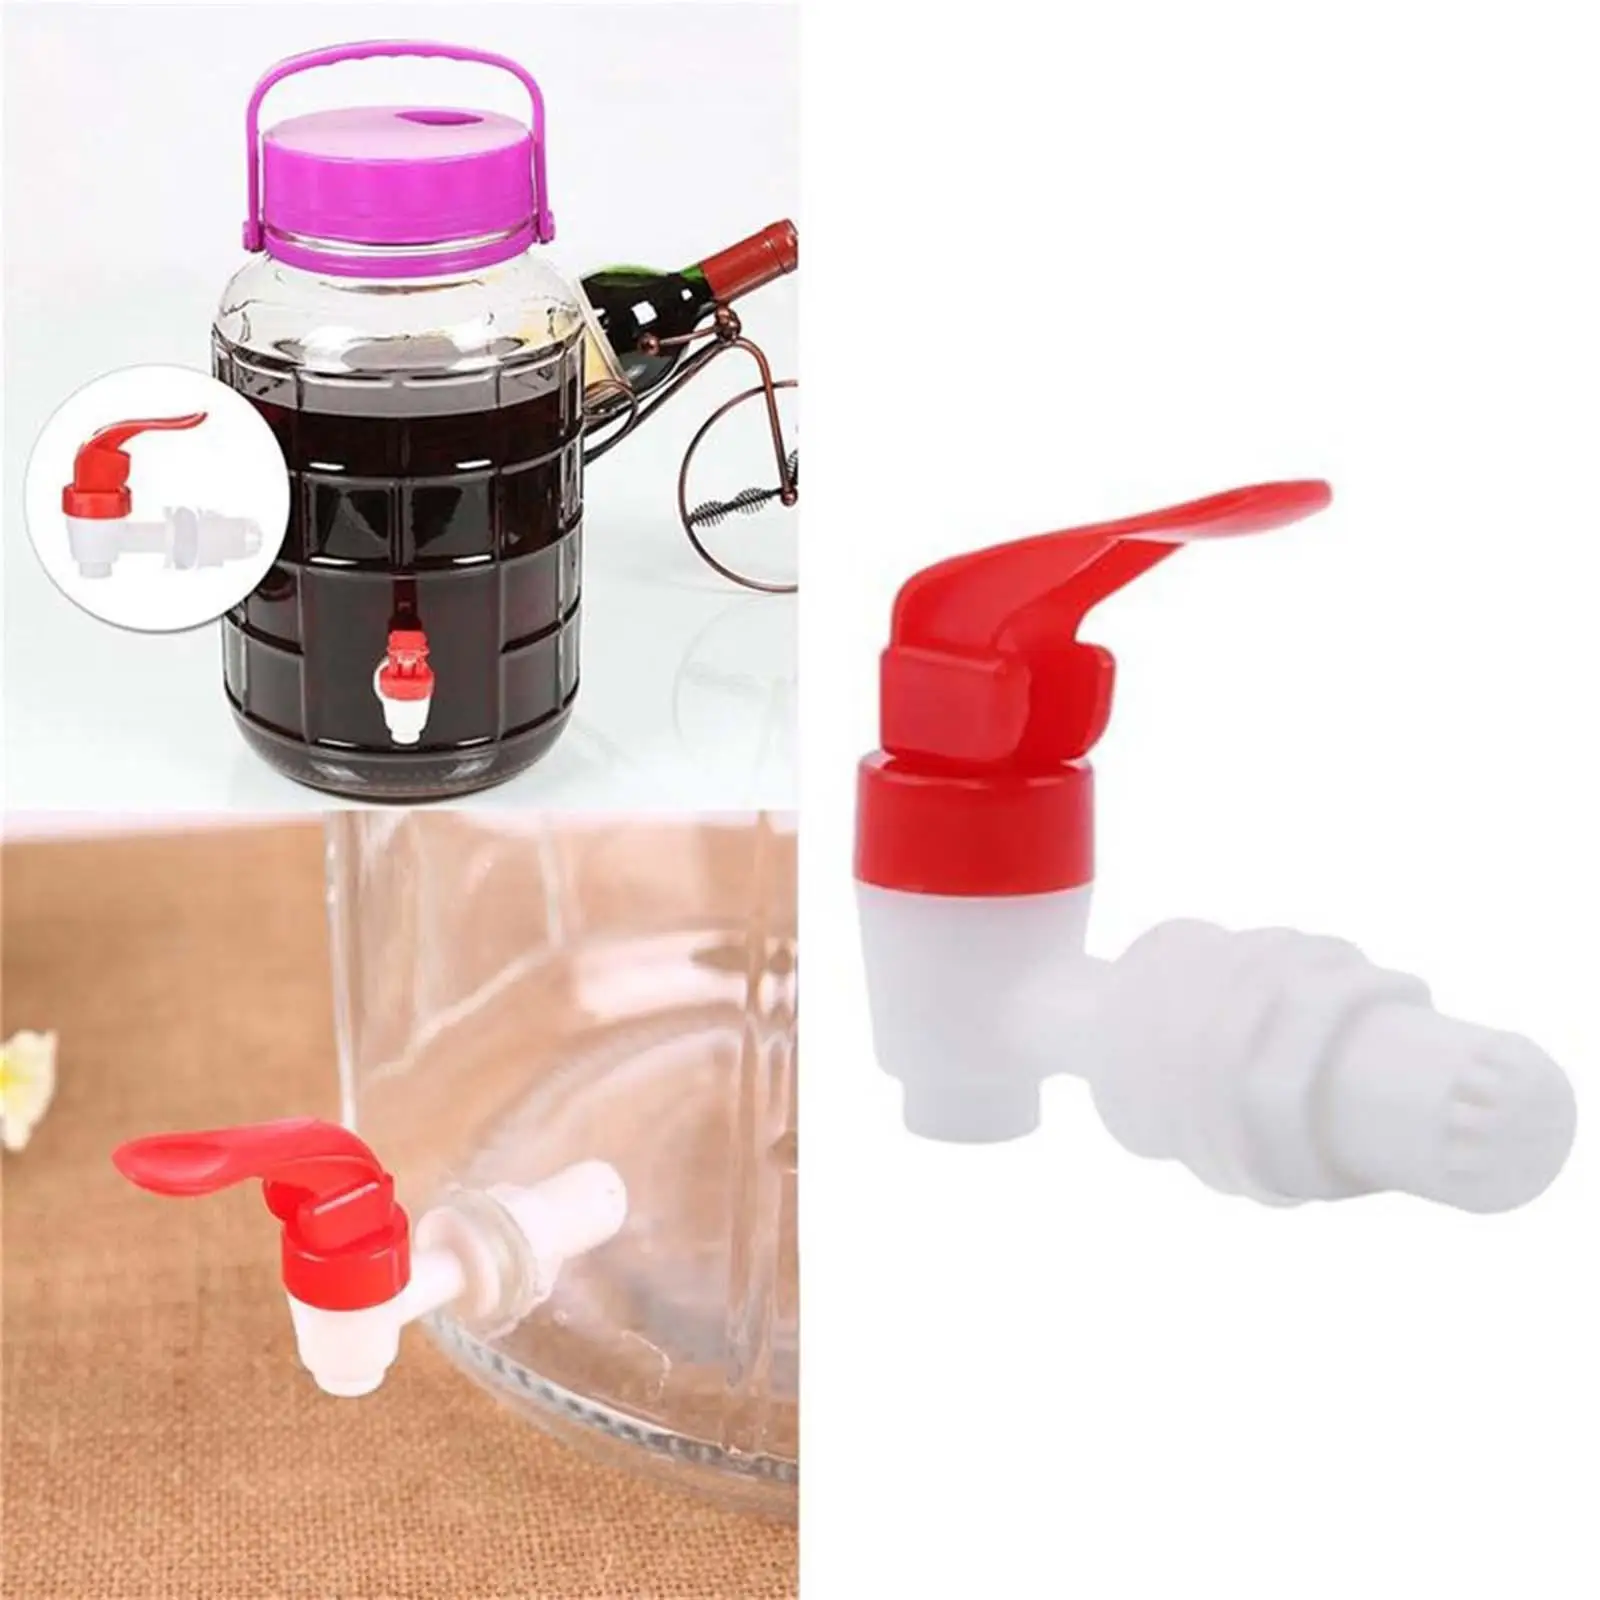 Adjustable Dispenser Valve Tap Prevent Leakage for Restaurants Home Beverage Juice